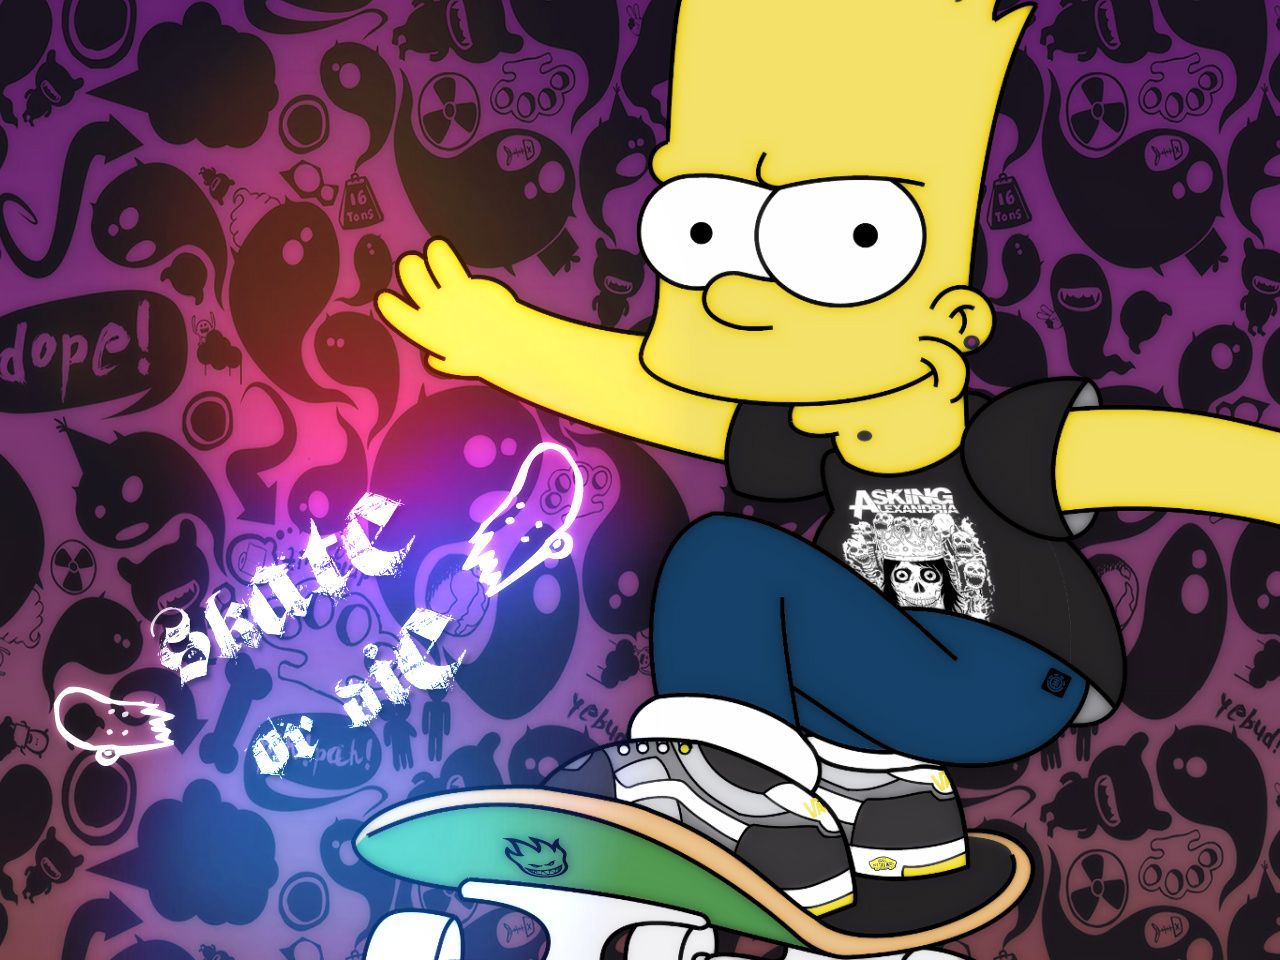 Старая версия обои. Барт симпсон крутой. Барт симпсон на скейтборде. Барт симпсон 15 лет. Барт симпсон топ.